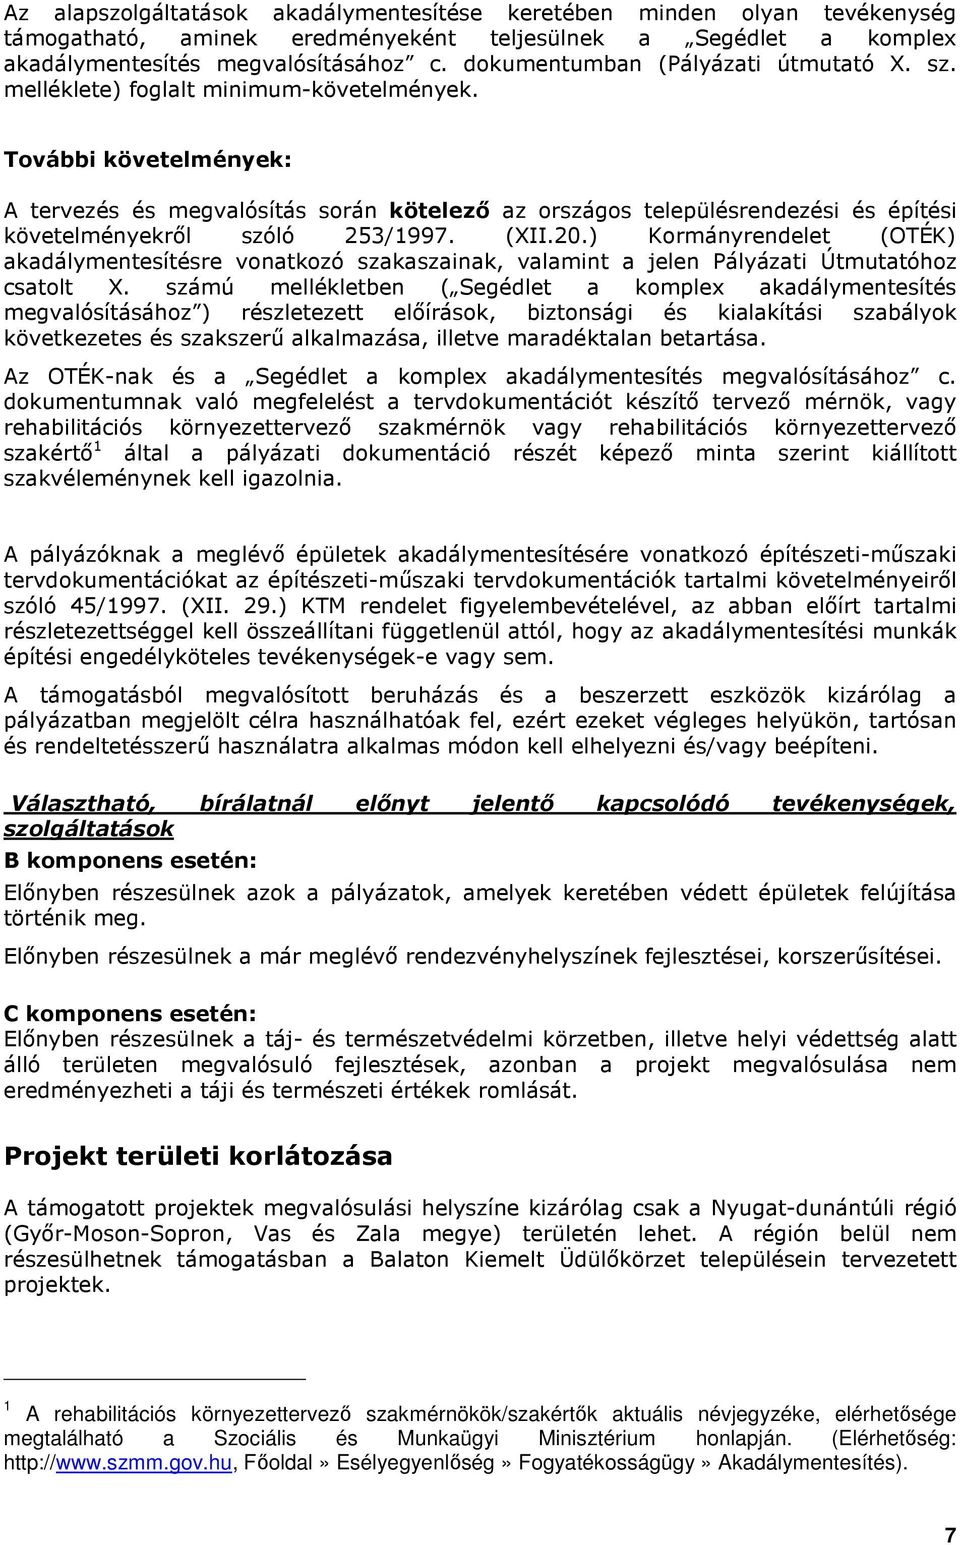 Tvábbi követelmények: A tervezés és megvalósítás srán kötelezı az rszágs településrendezési és építési követelményekrıl szóló 253/1997. (XII.20.